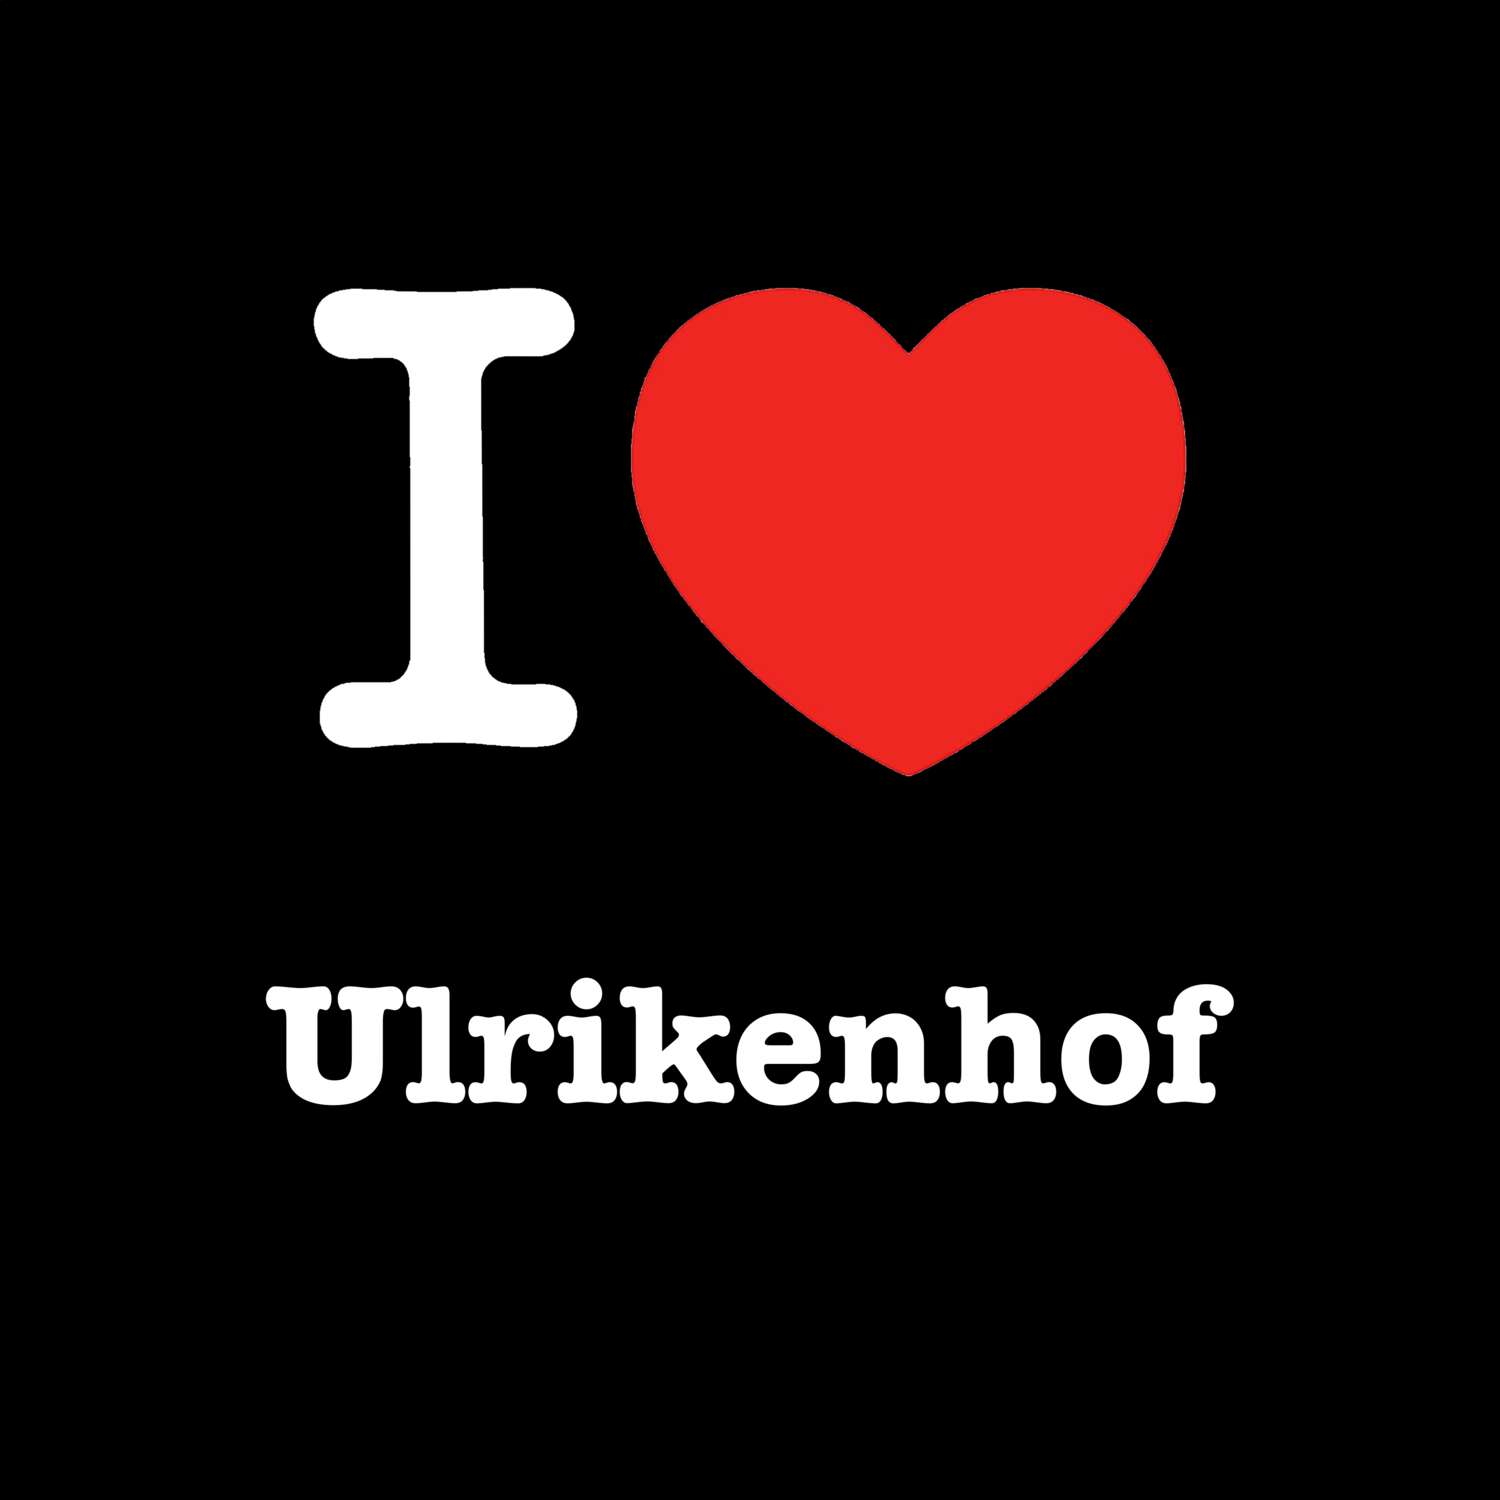 Ulrikenhof T-Shirt »I love«